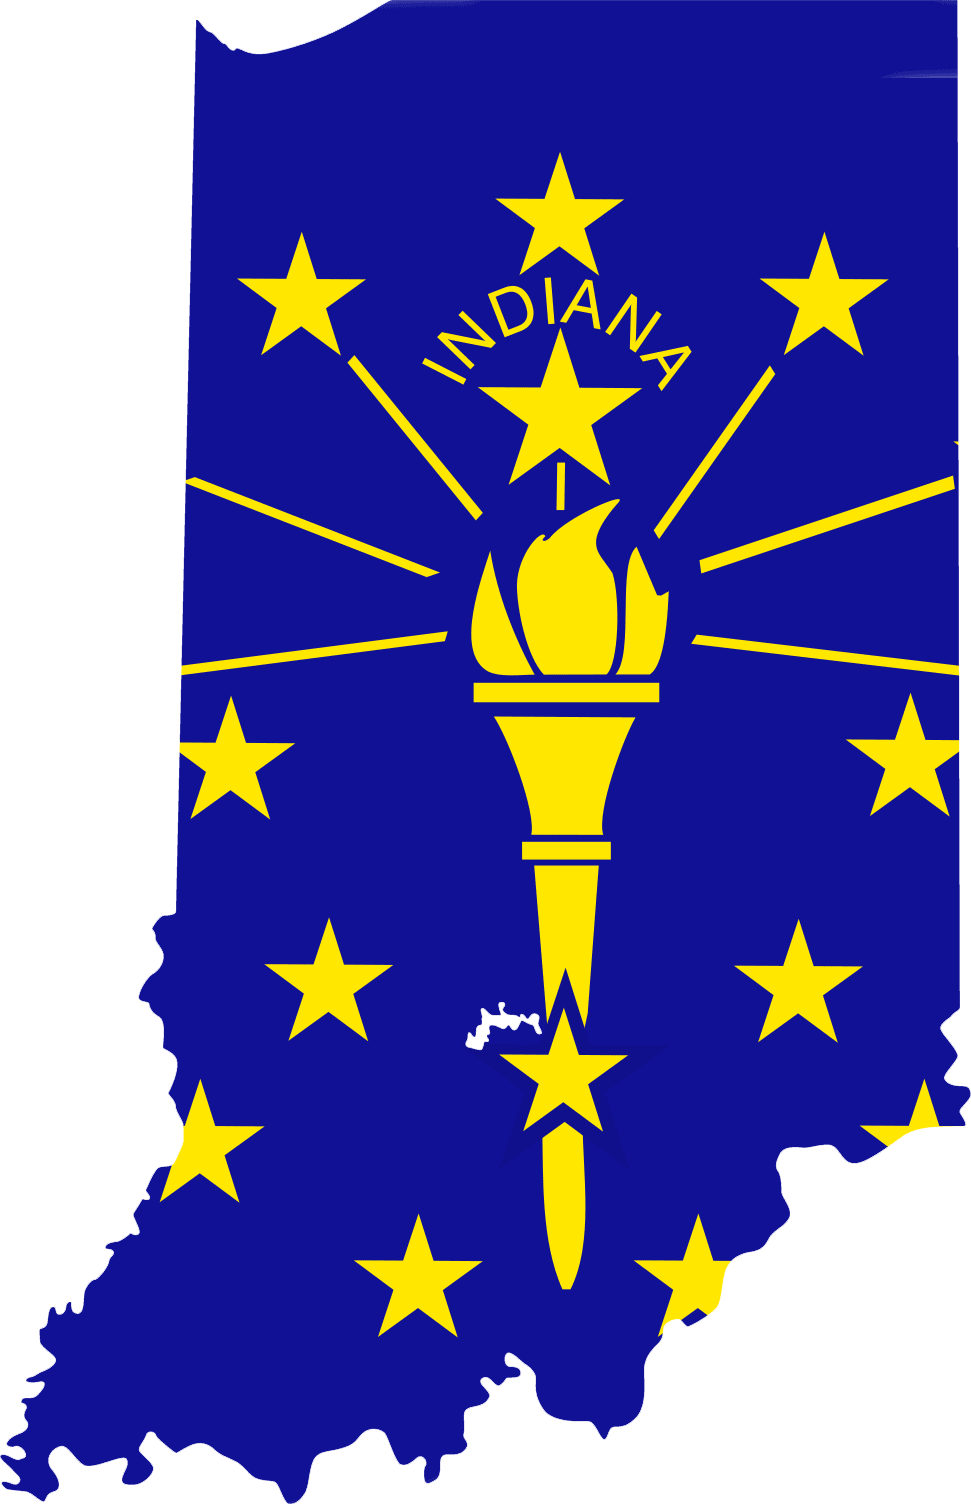 Indiana Images Indiana State Flag Indiana Flag Indiana State Flag Indiana